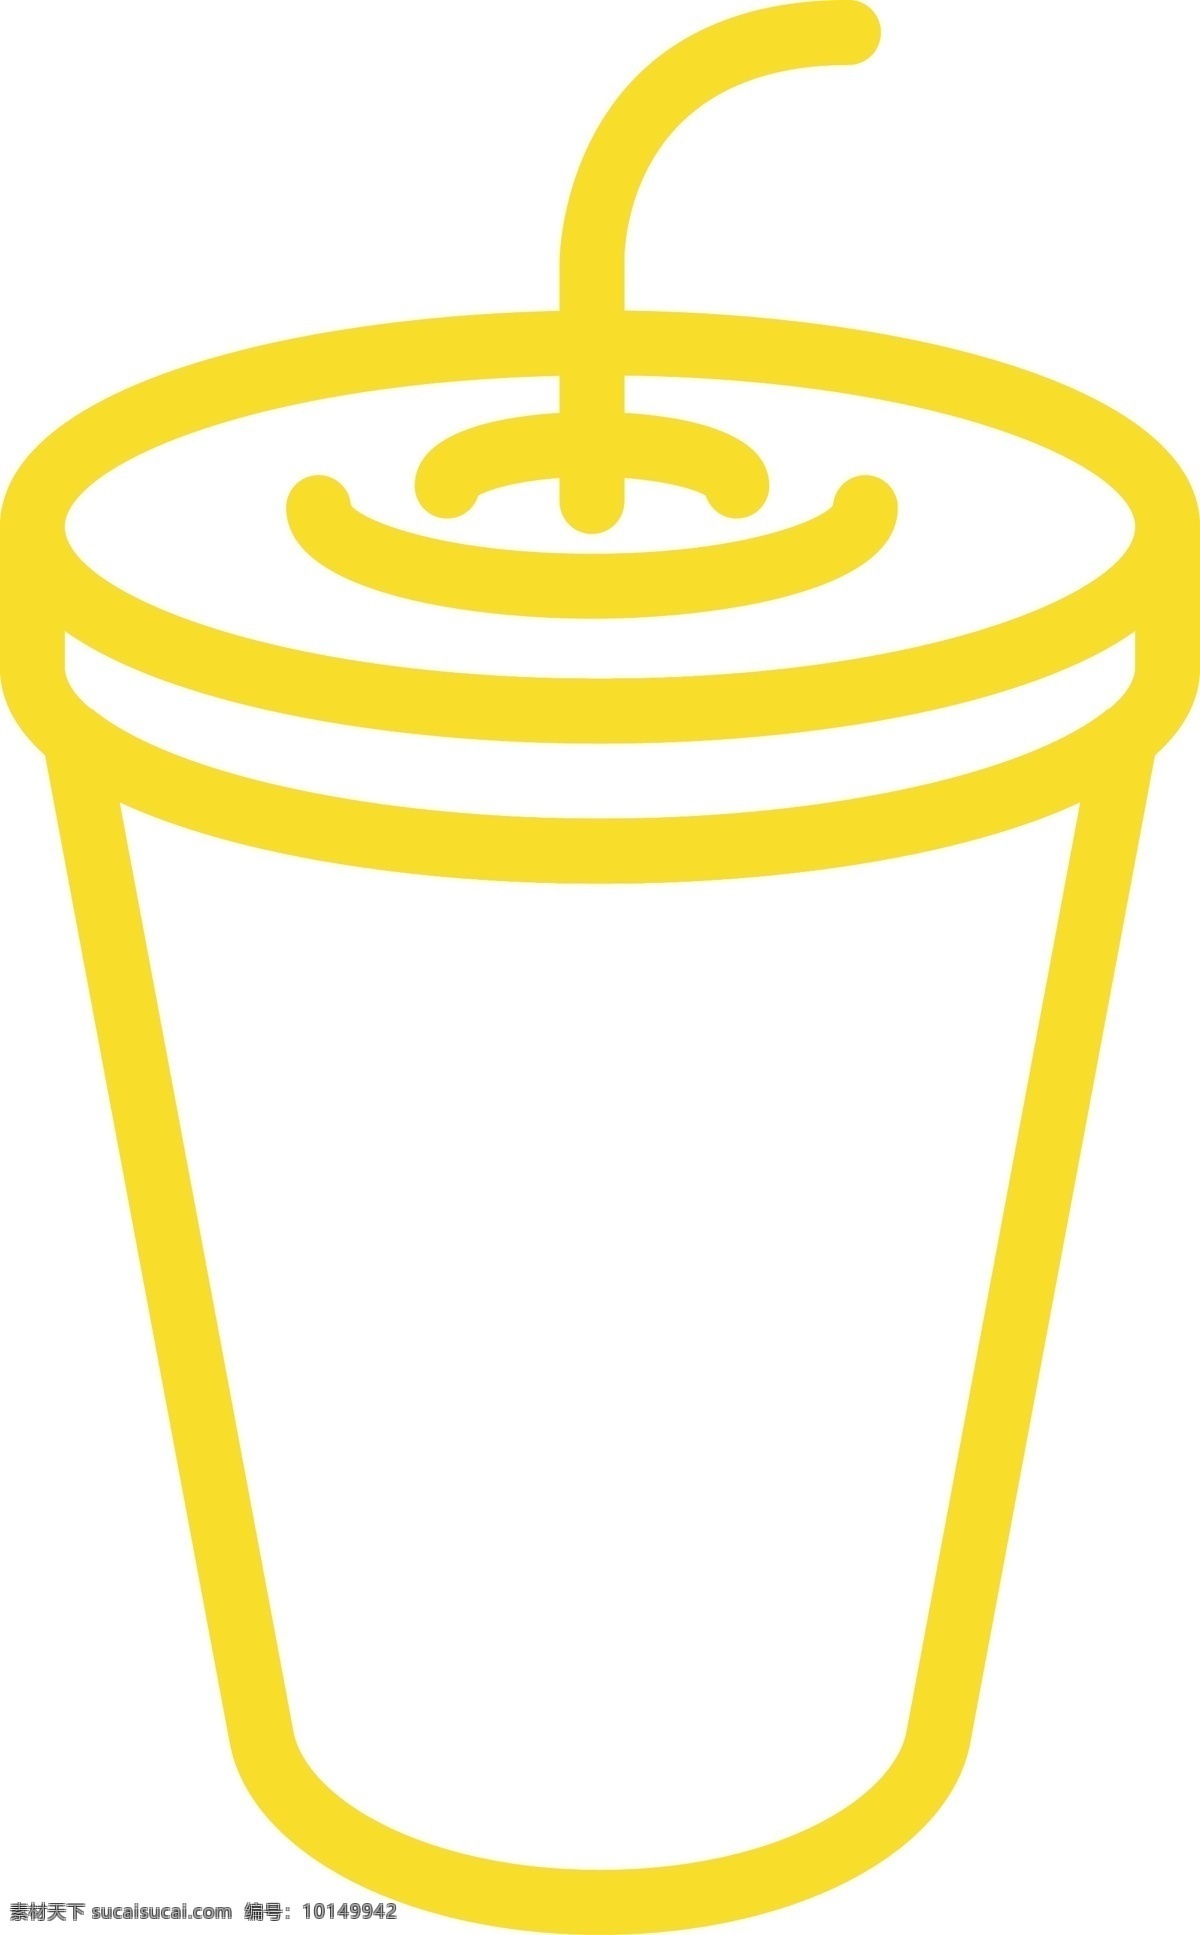 饮料 杯子 免 抠 图 饮料盒子 ui应用图标 网页图标 电脑图标 卡通图案 卡通插画 饮料杯子 饮品 免抠图